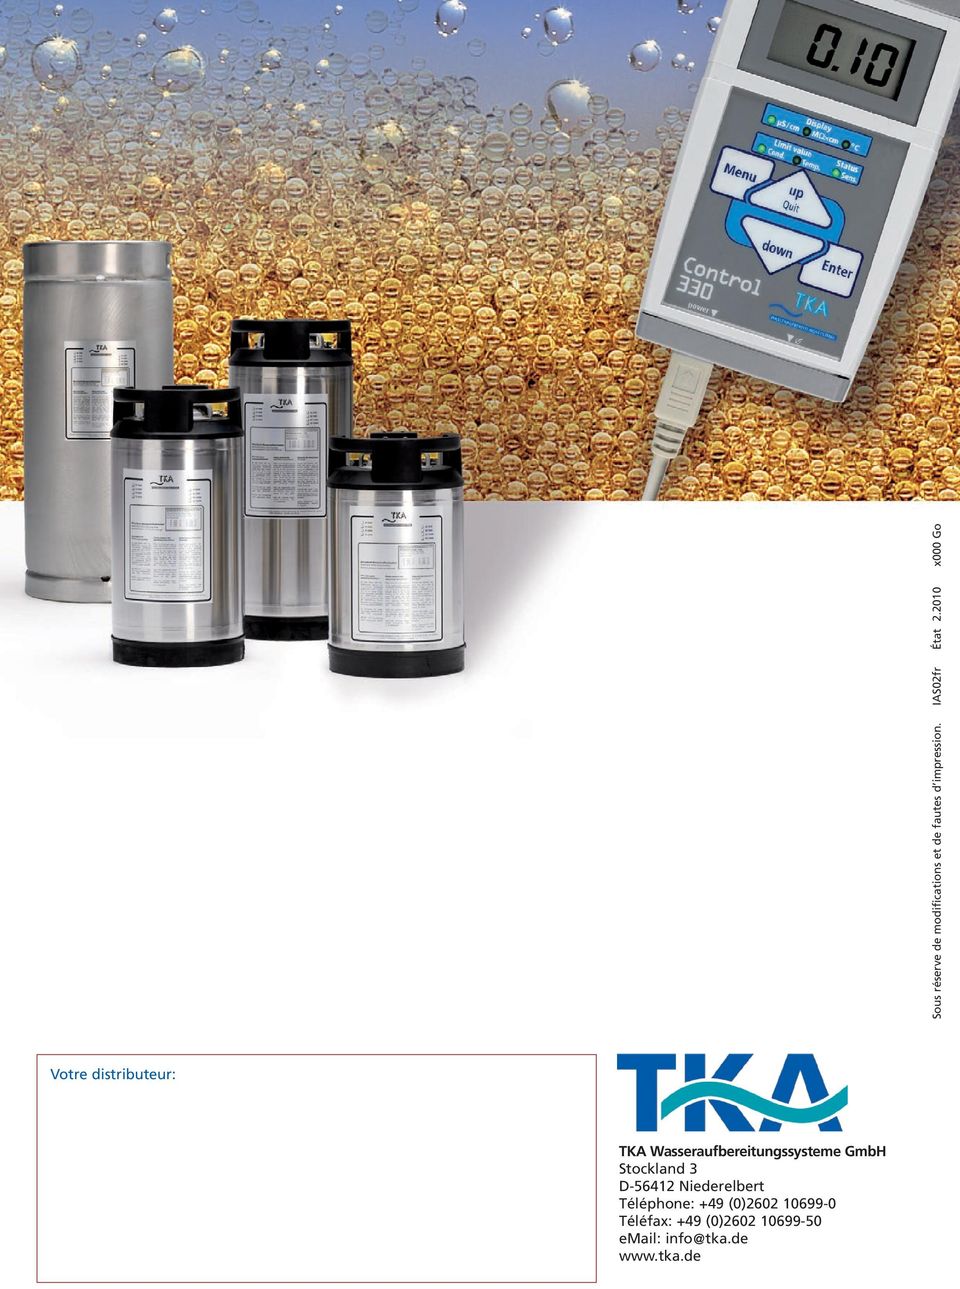 2010 x000 Go Votre distributeur: TKA Wasseraufbereitungssysteme